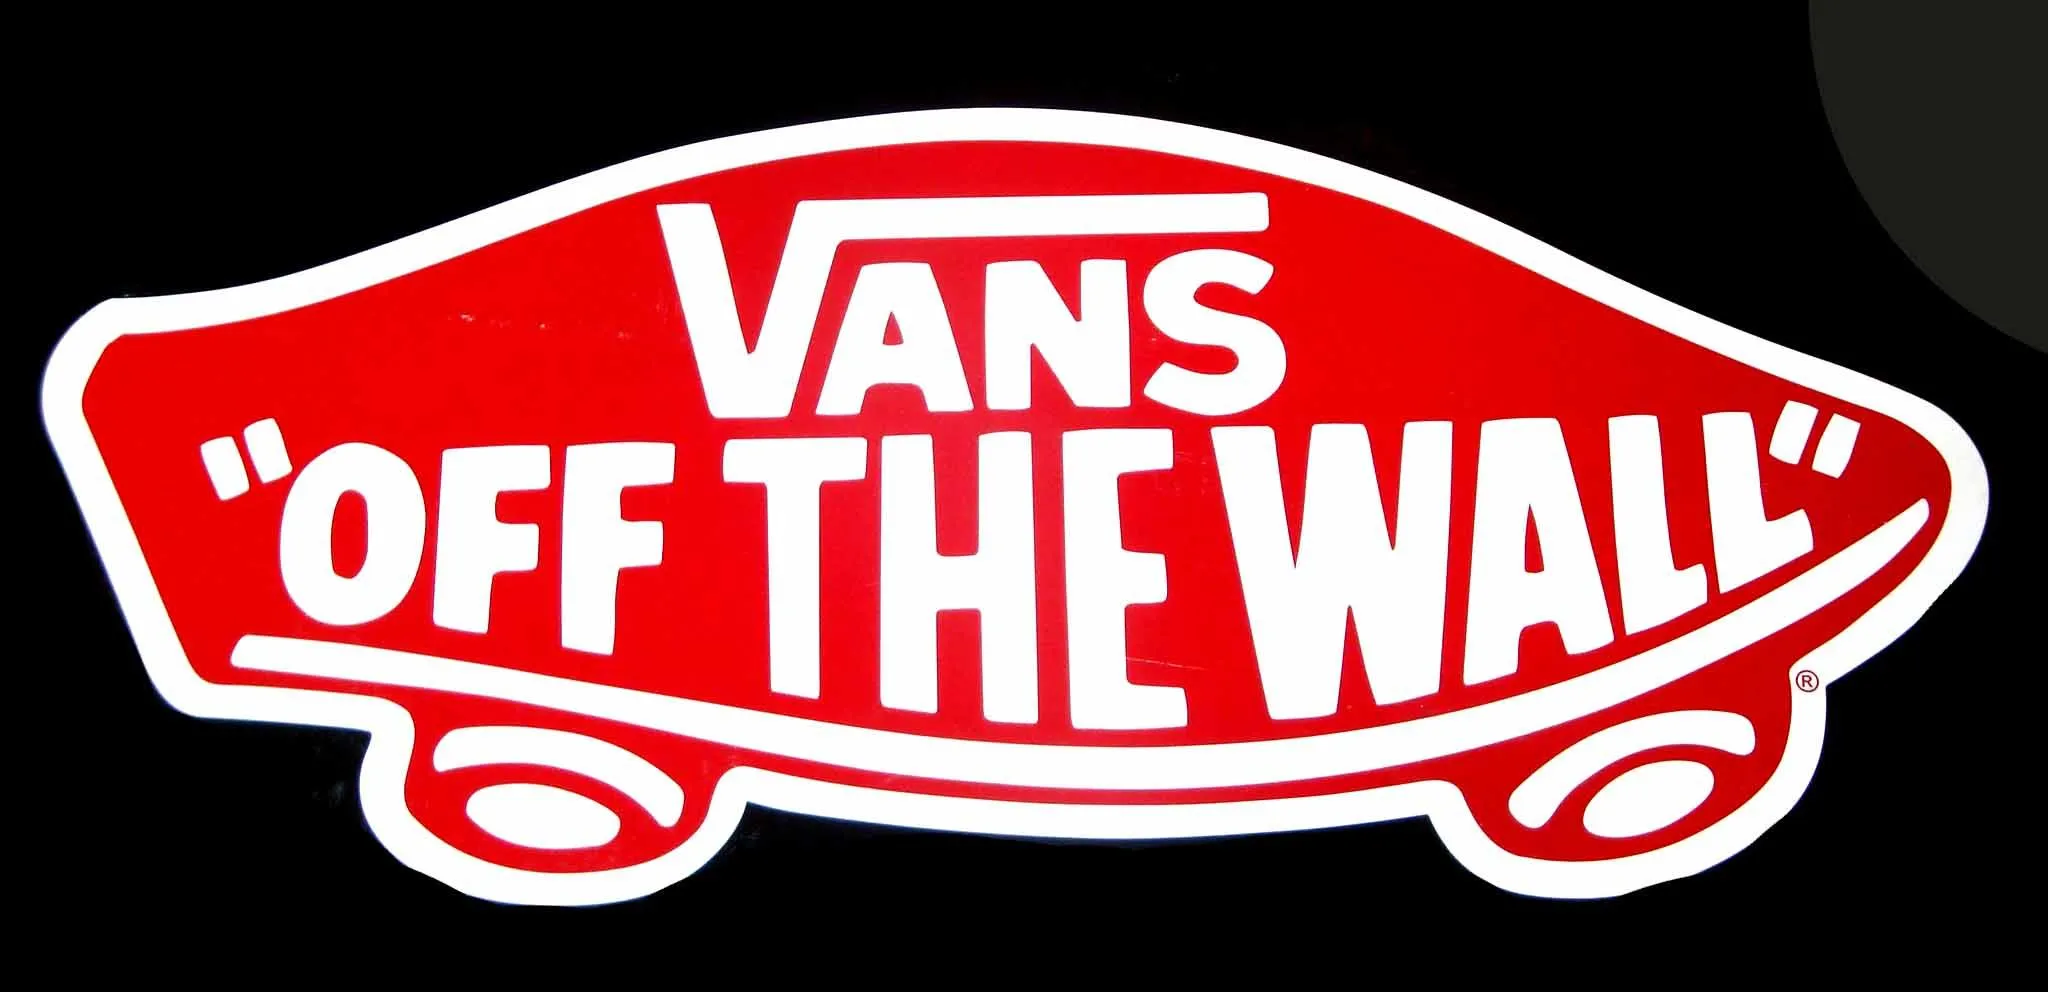 Logos For > Vans Skateboard Logo Wallpaper